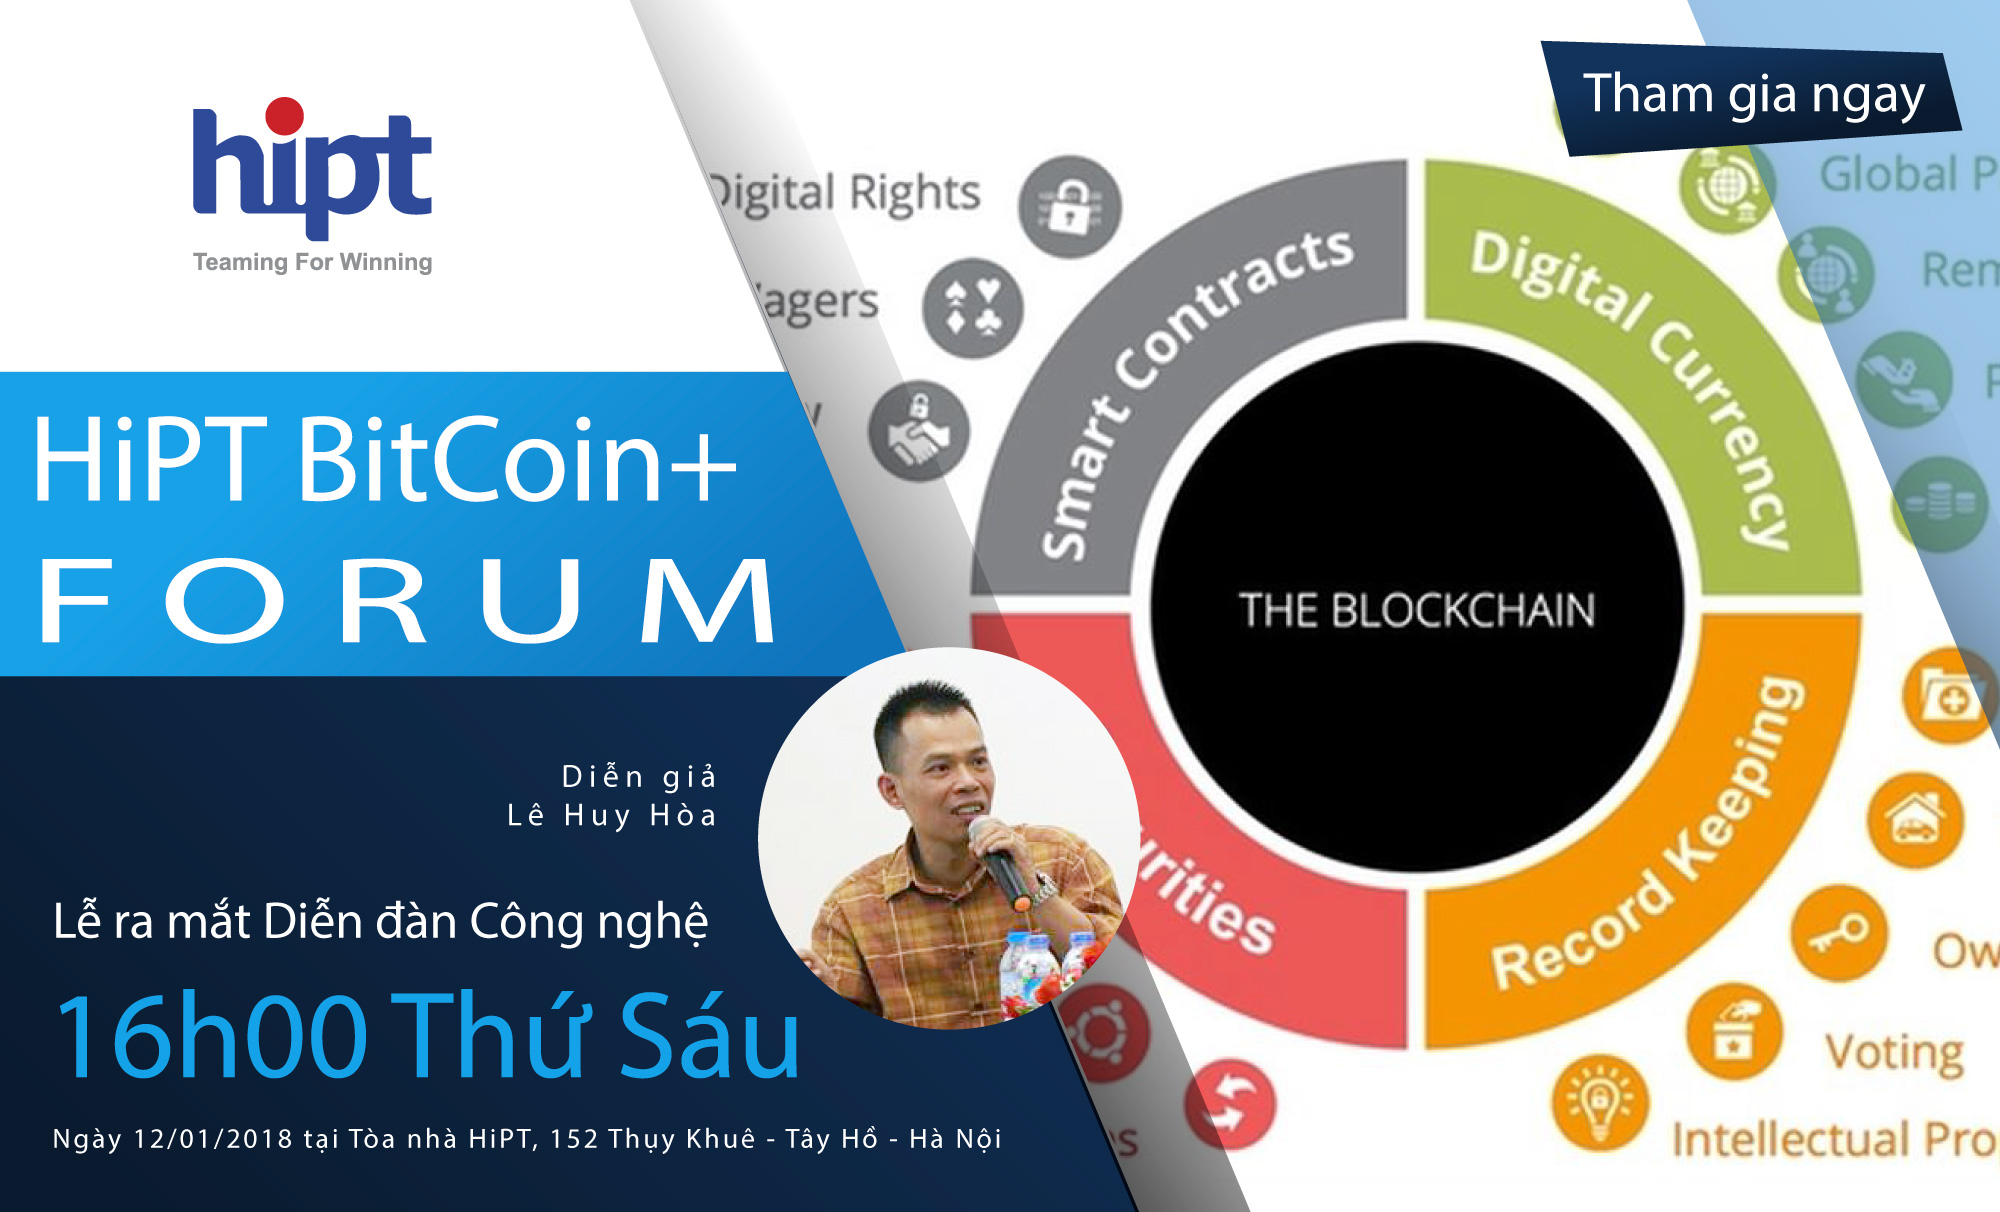 Ra mắt Diễn đàn Công nghệ HiPT BitCoin+ Forum